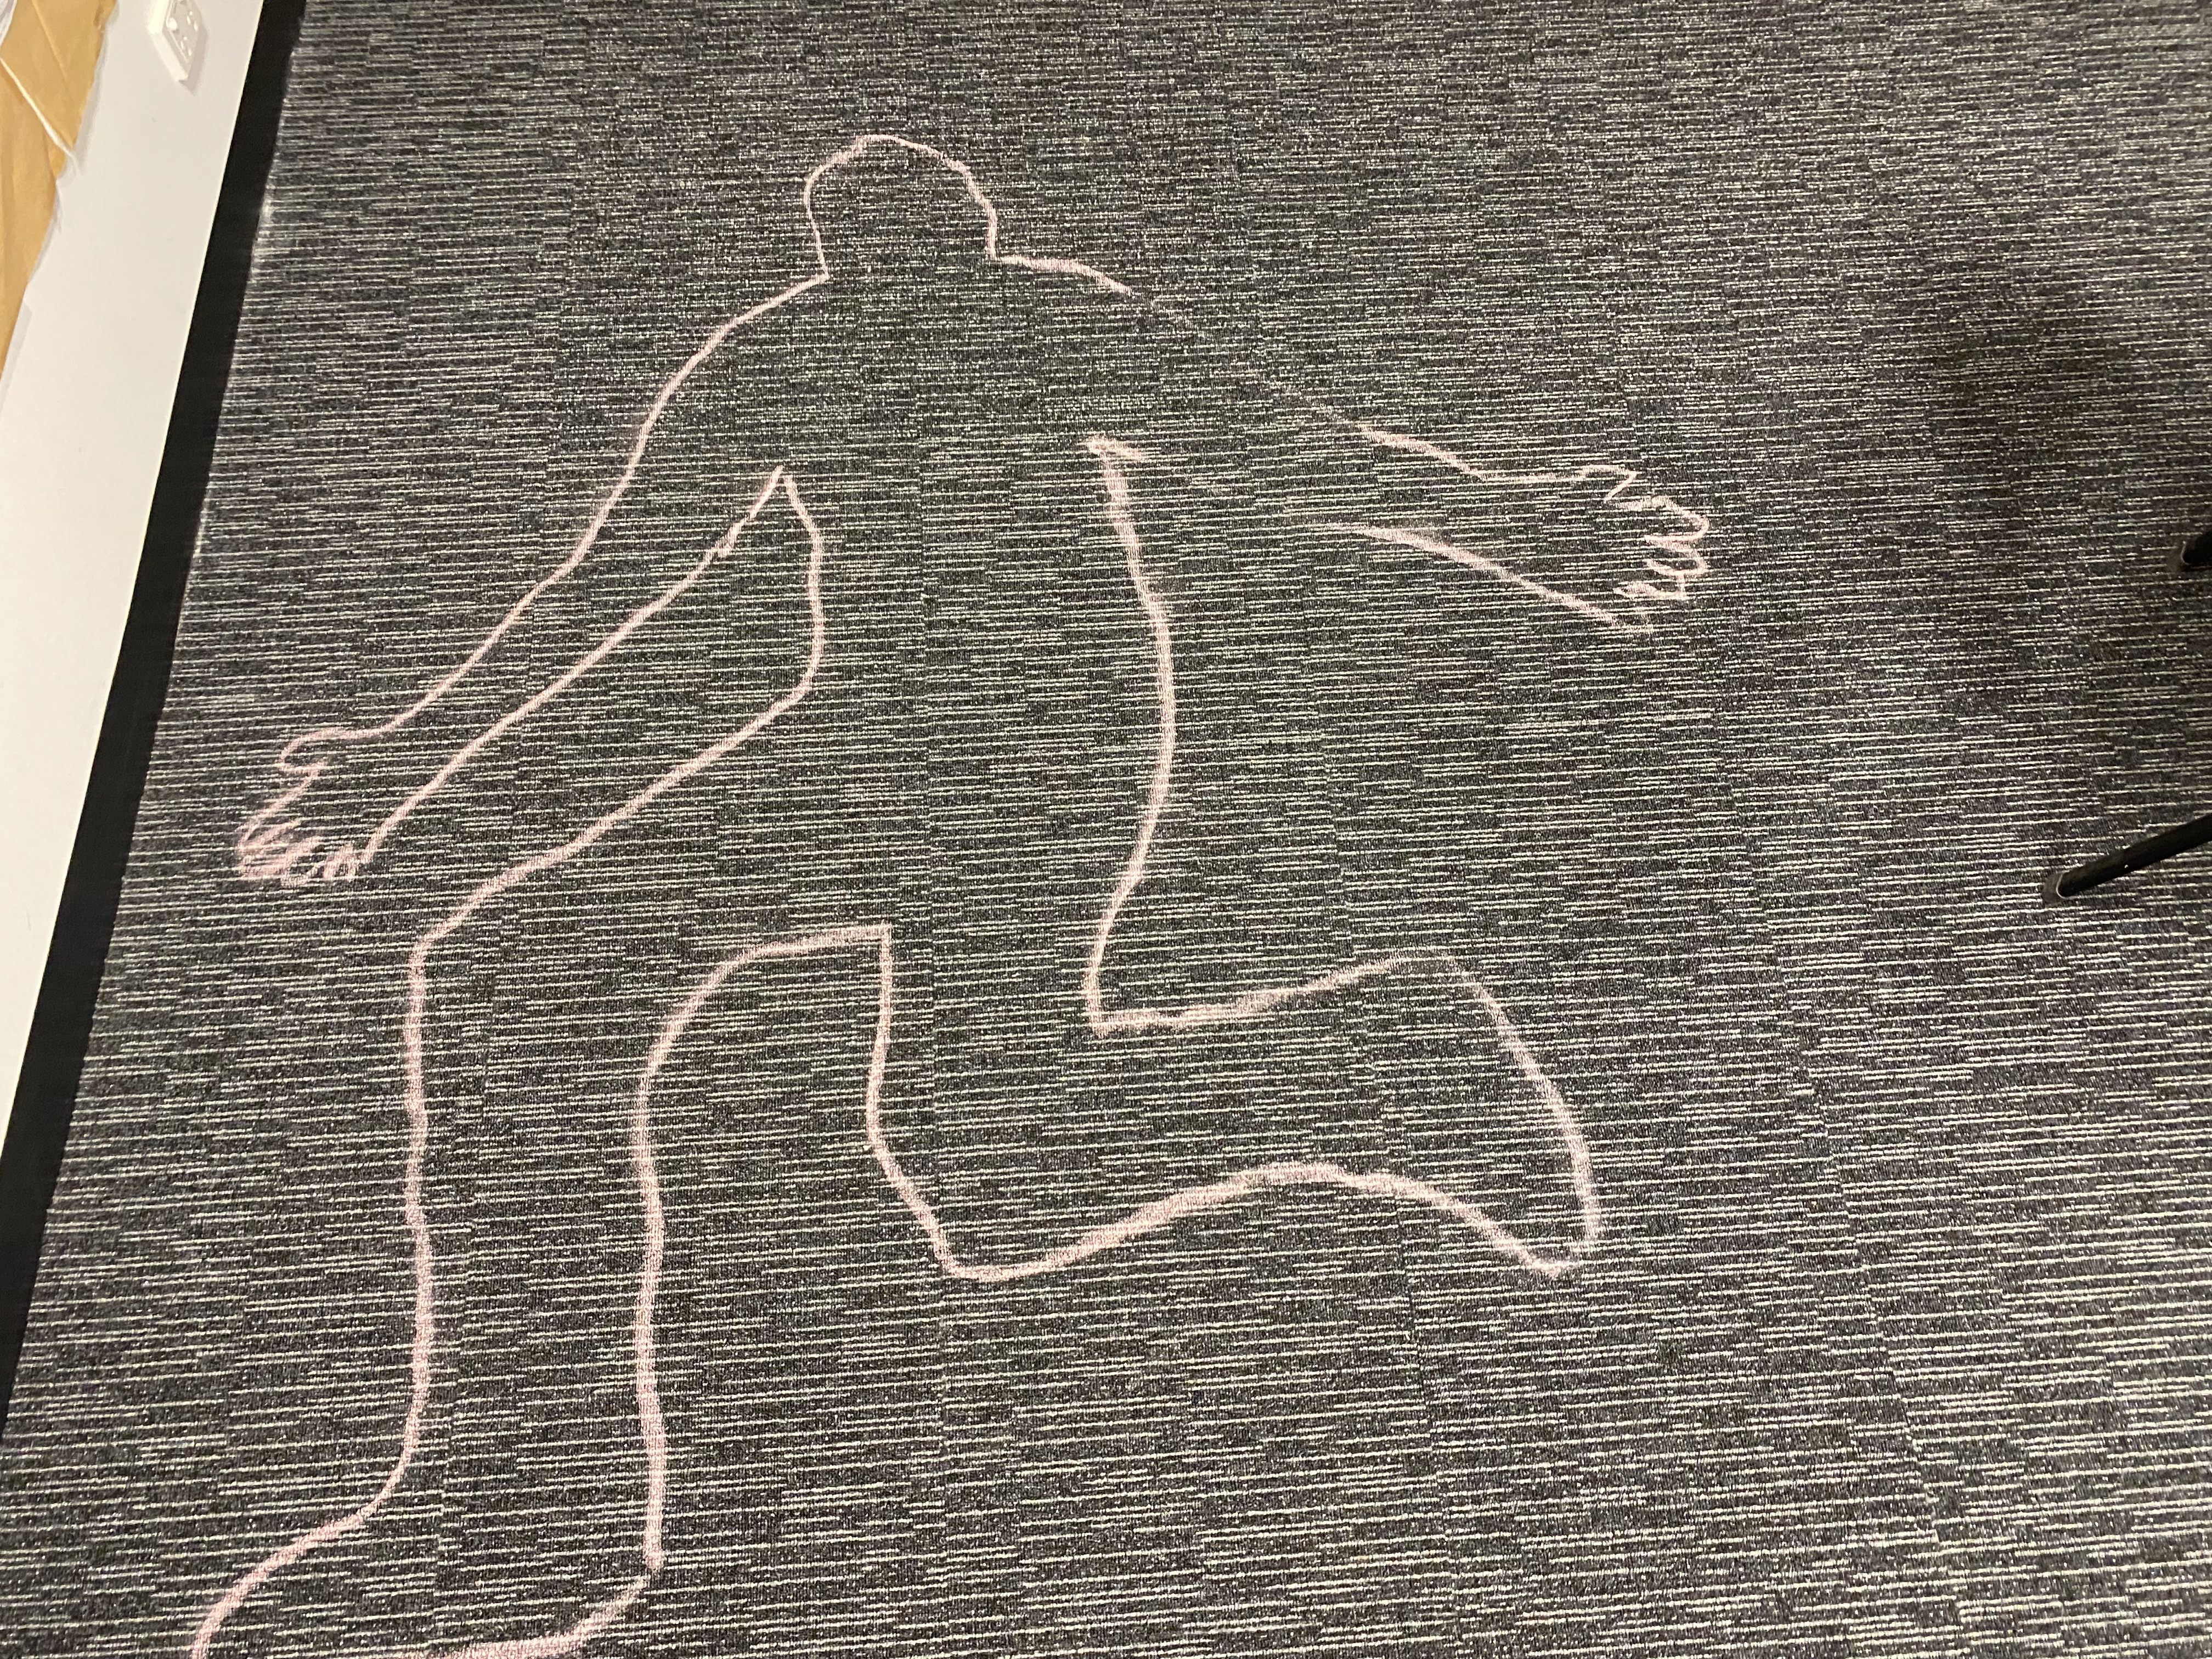 地毯上用粉笔画出的人体轮廓。